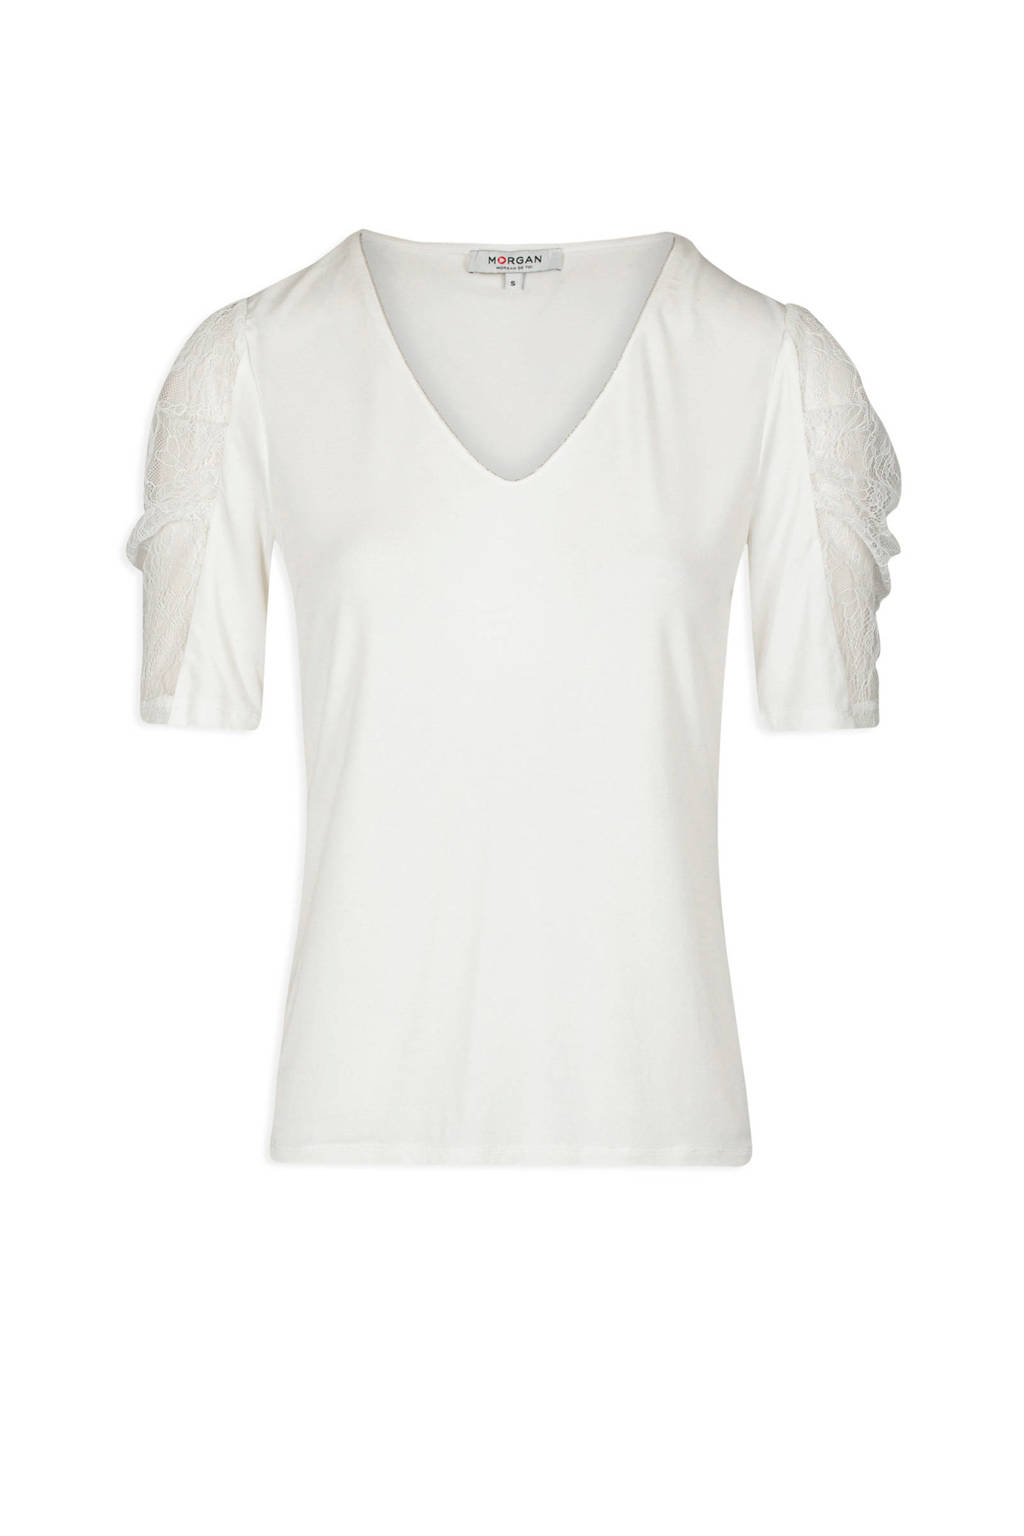 Geurig Mount Bank Beschikbaar Morgan T-shirt met kant wit | wehkamp